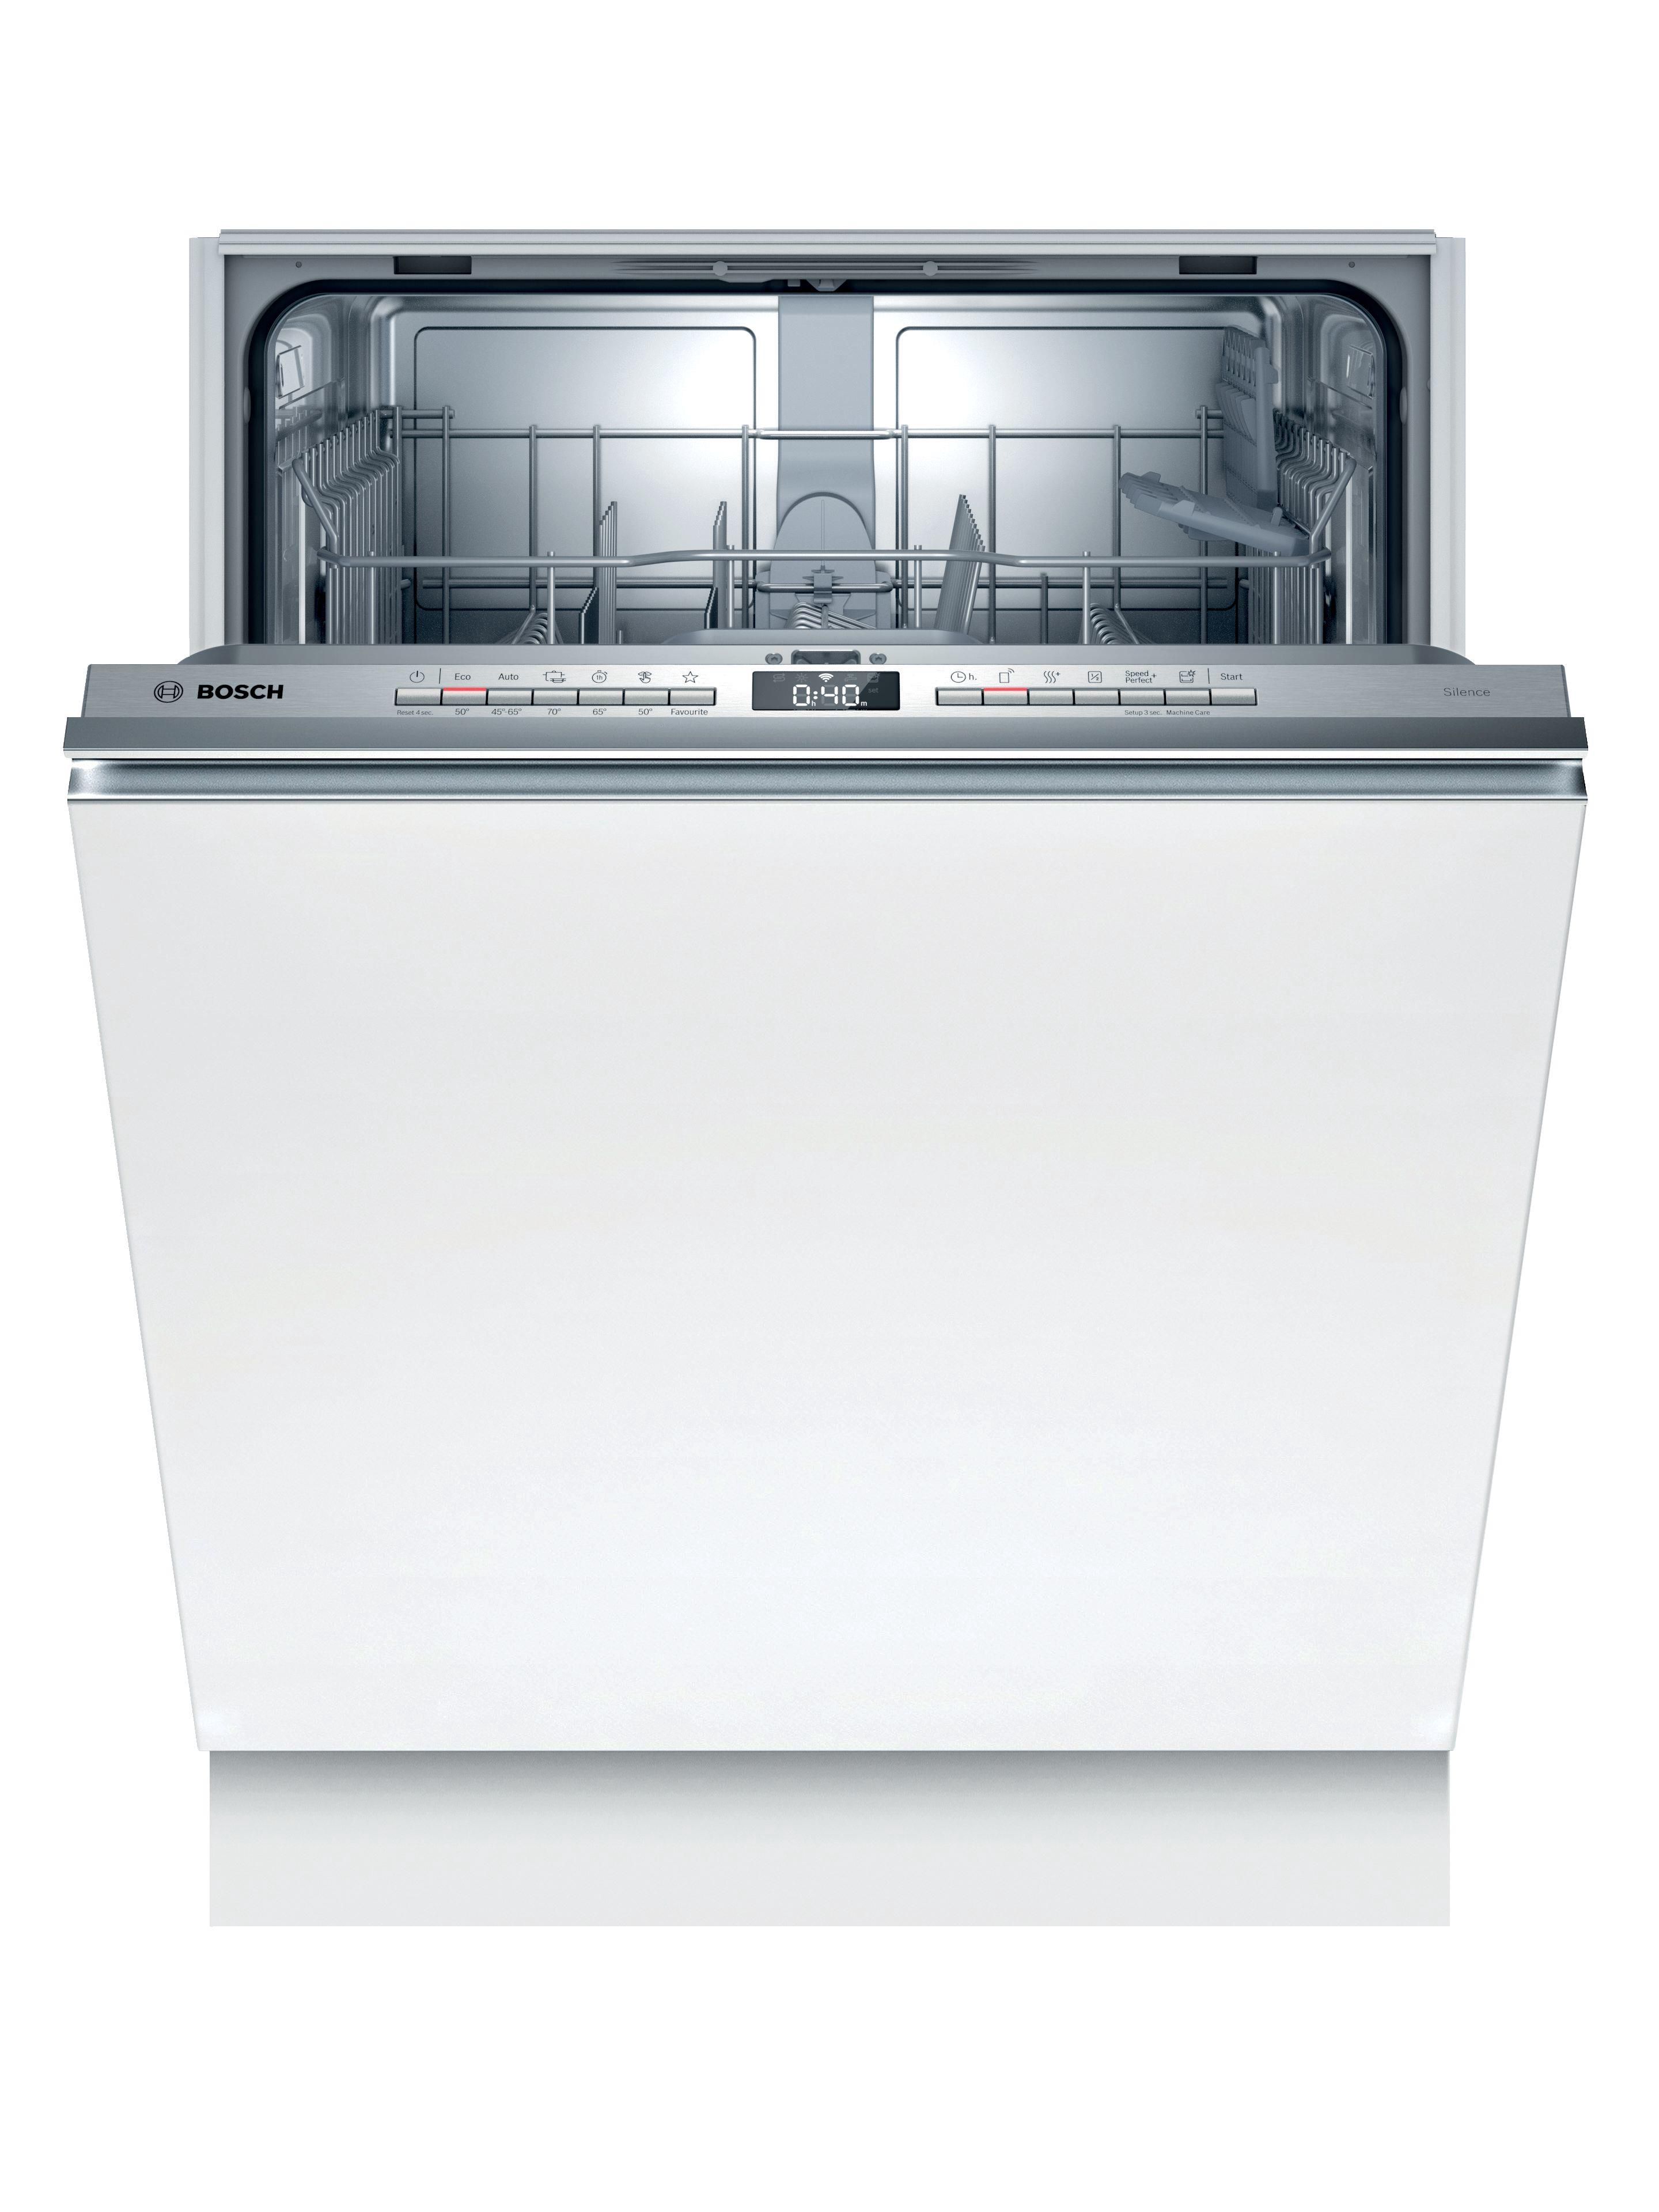 Встраиваемая посудомоечная машина 60 рейтинг качество. Bosch spv6hmx1mr. Встраиваемая посудомоечная машина Bosch spv2ikx10e. Посудомоечная машина Bosch spv2imy2er. Встраиваемая посудомоечная машина 60 см Bosch serie|4 sgv4hmx3fr.